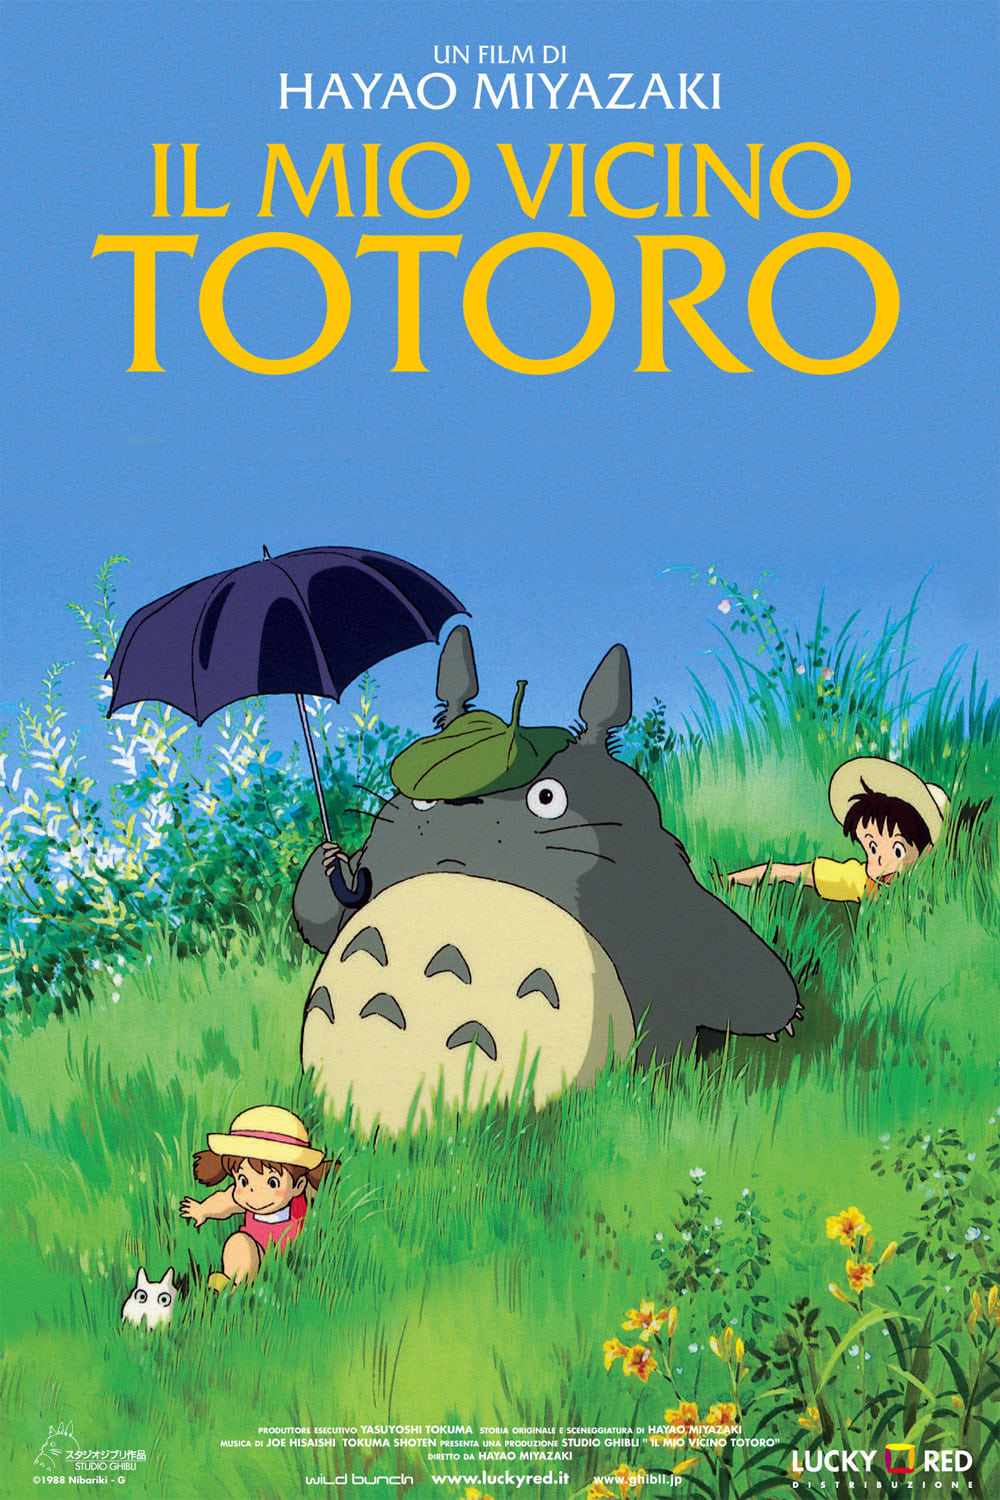 Poster for the movie "Il mio vicino Totoro"